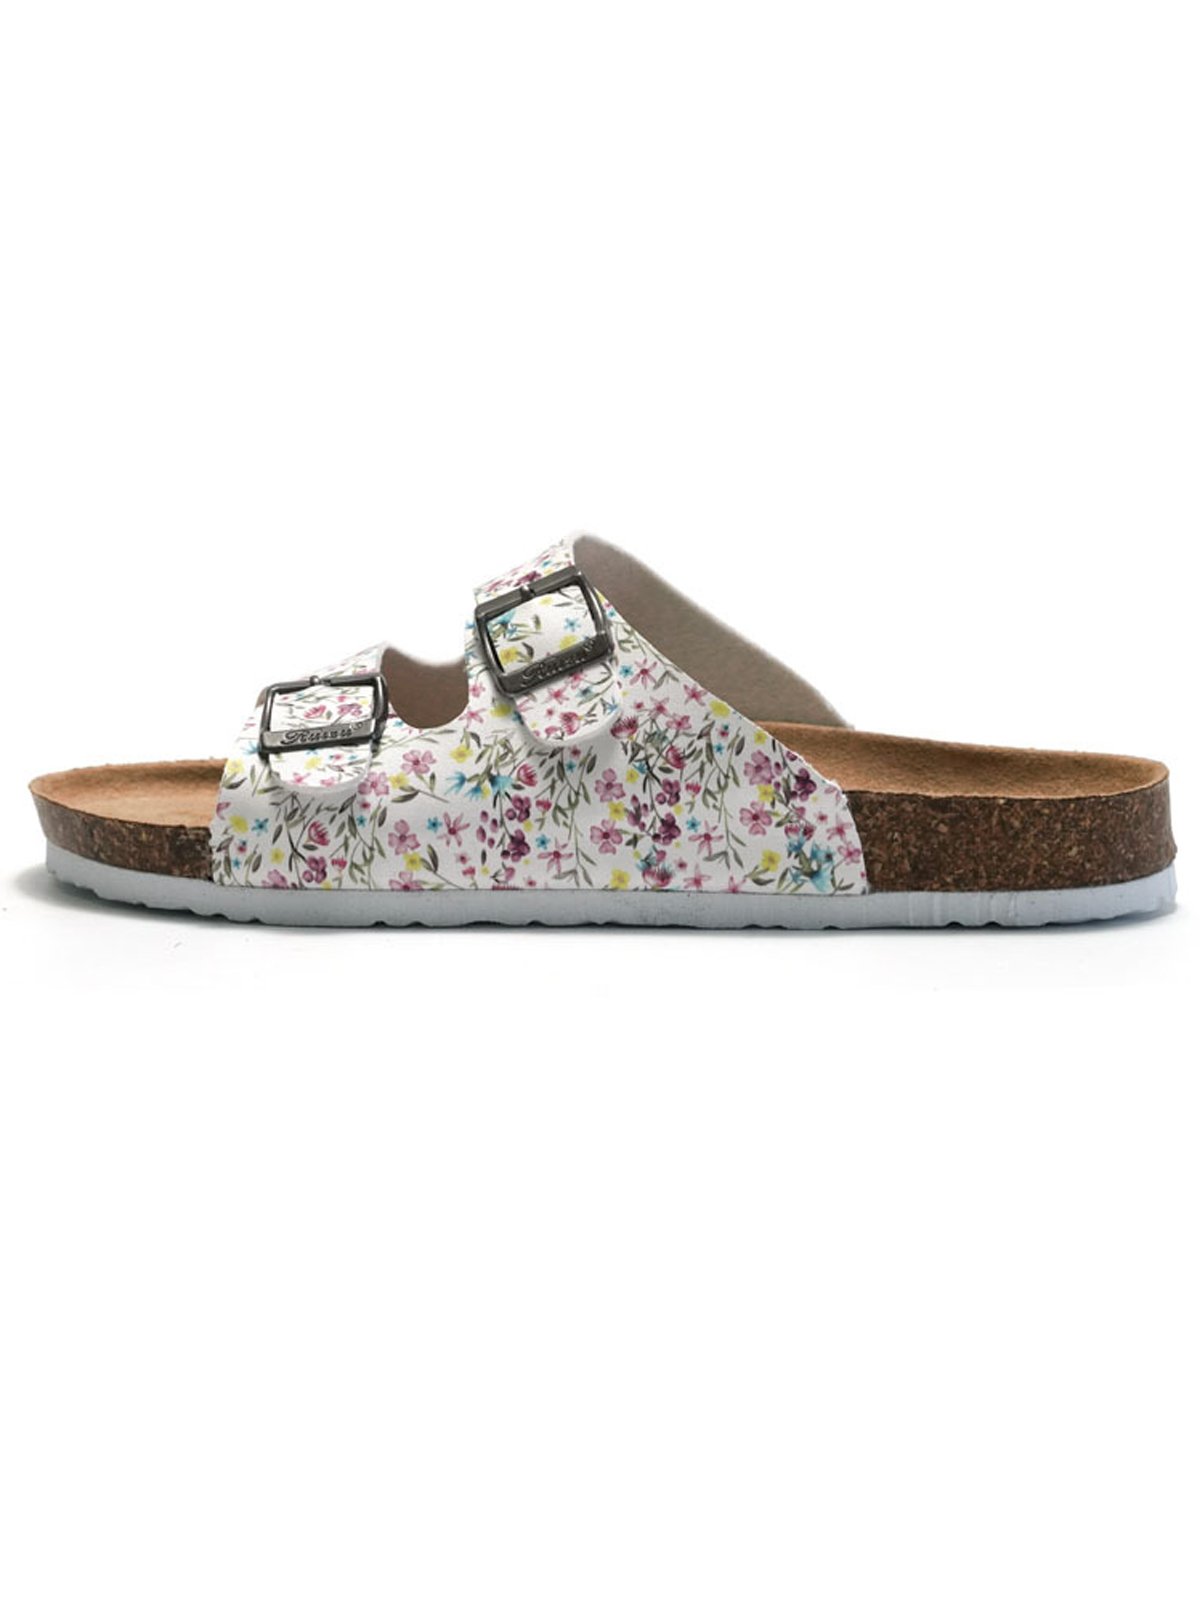 Casual Floral Slip On Flat Heel Slide Sandals